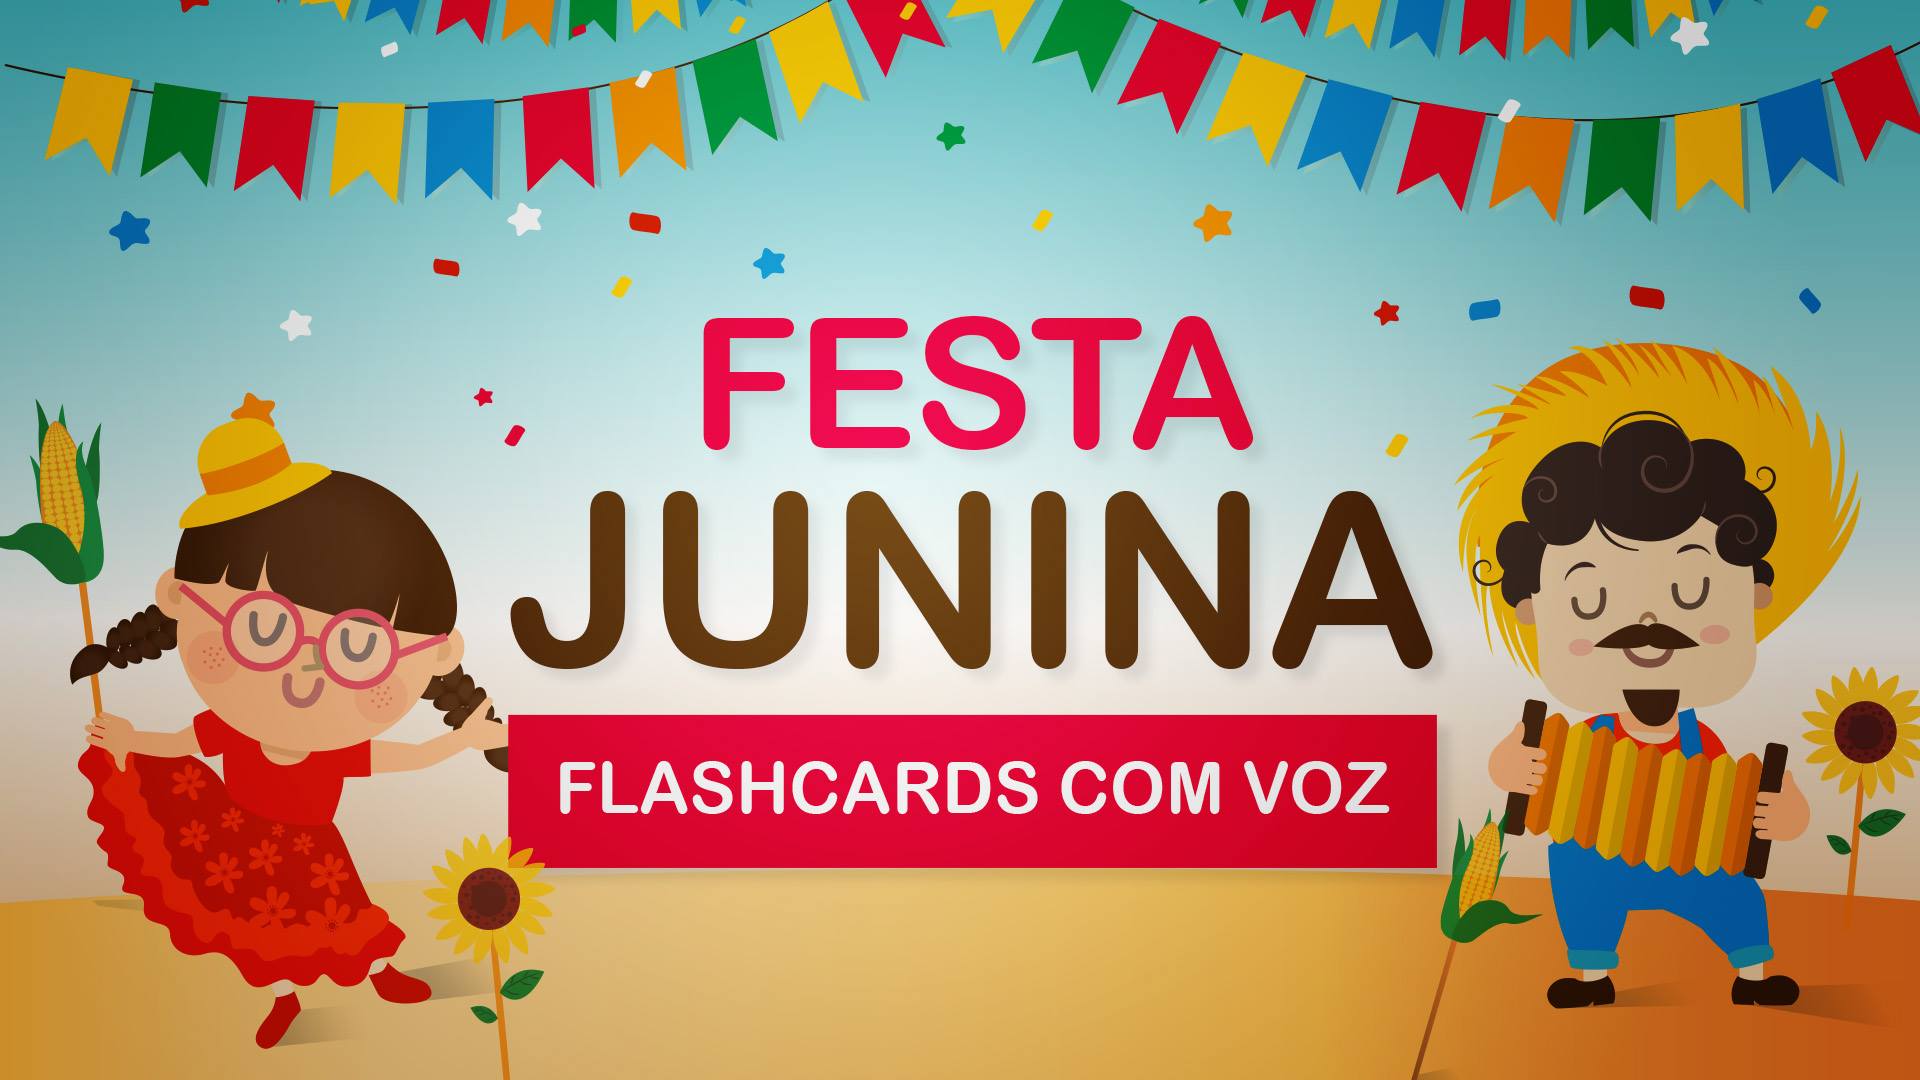 dois caipiras dancando , menino e menina, bandeirinhas. escrito - festa junina - flashcards.